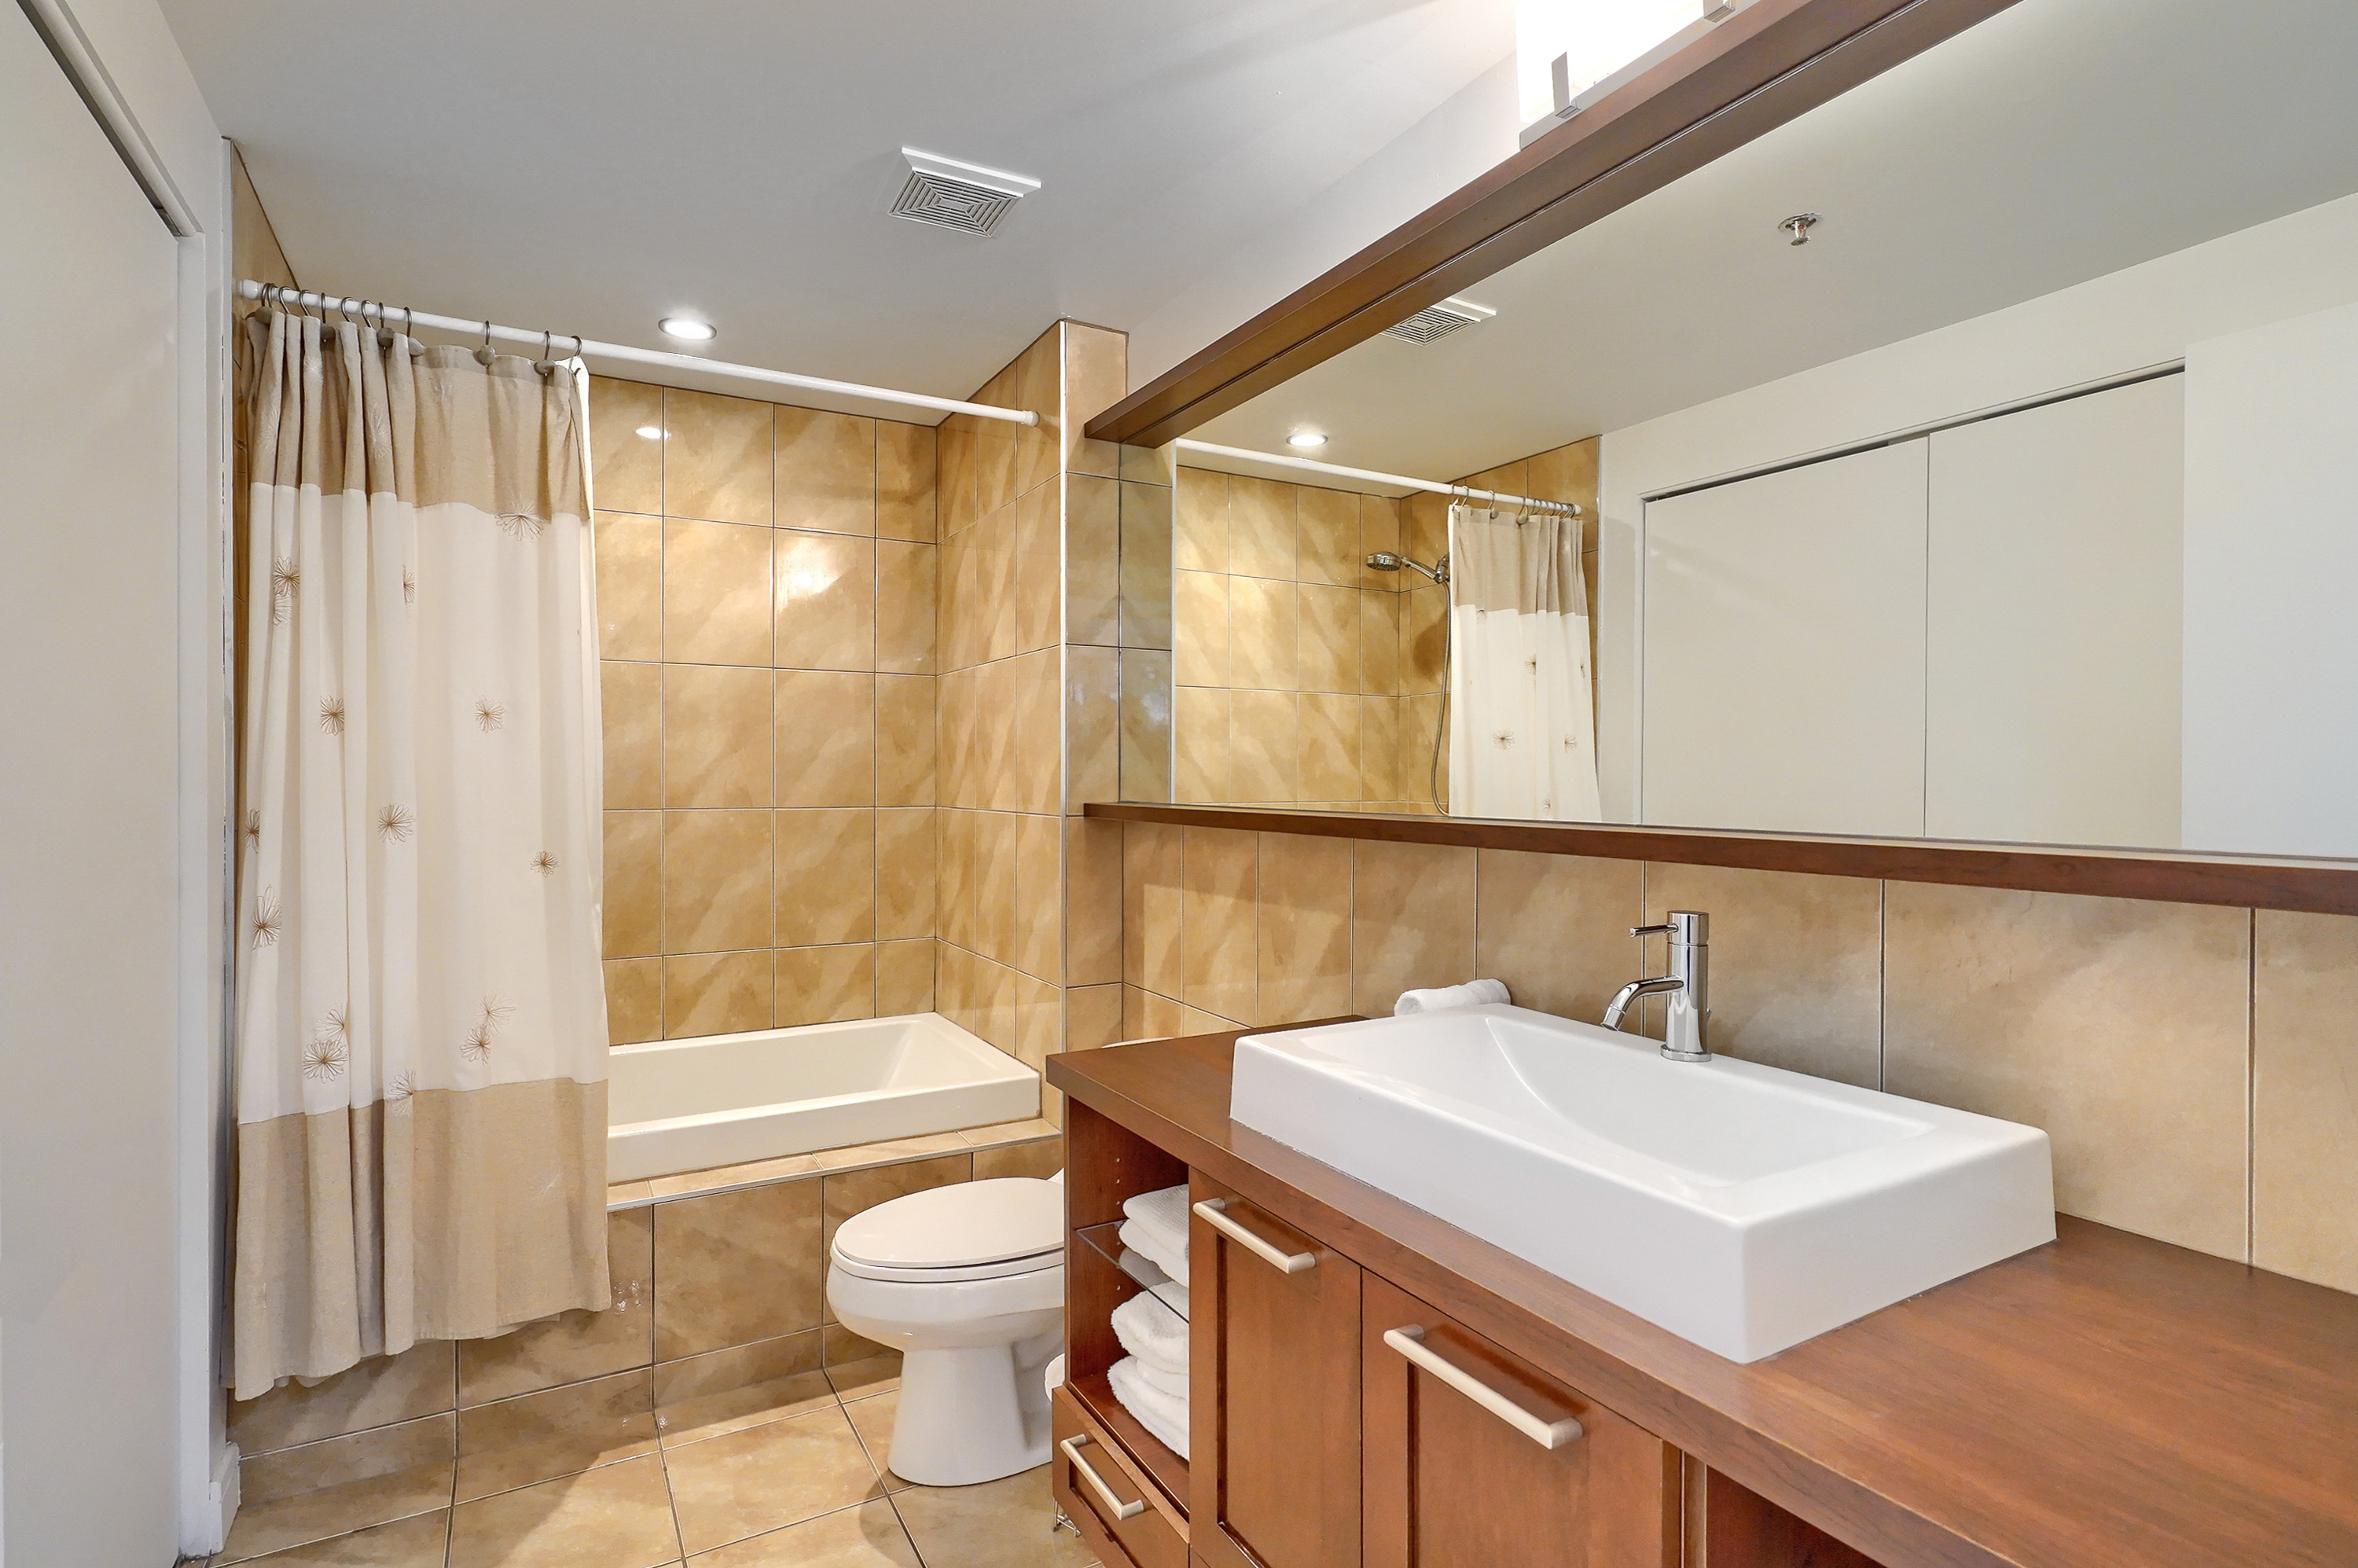 Vue en angle de la salle de bain montrant la toilette et le lavabo carré unique, moderne, blanc et épuré. Aussi, nous voyons la baignoire spacieuse et le miroir et l'éclairage dans cette salle de bain moderne. Un avantage de ce logement meublé à Montréal 